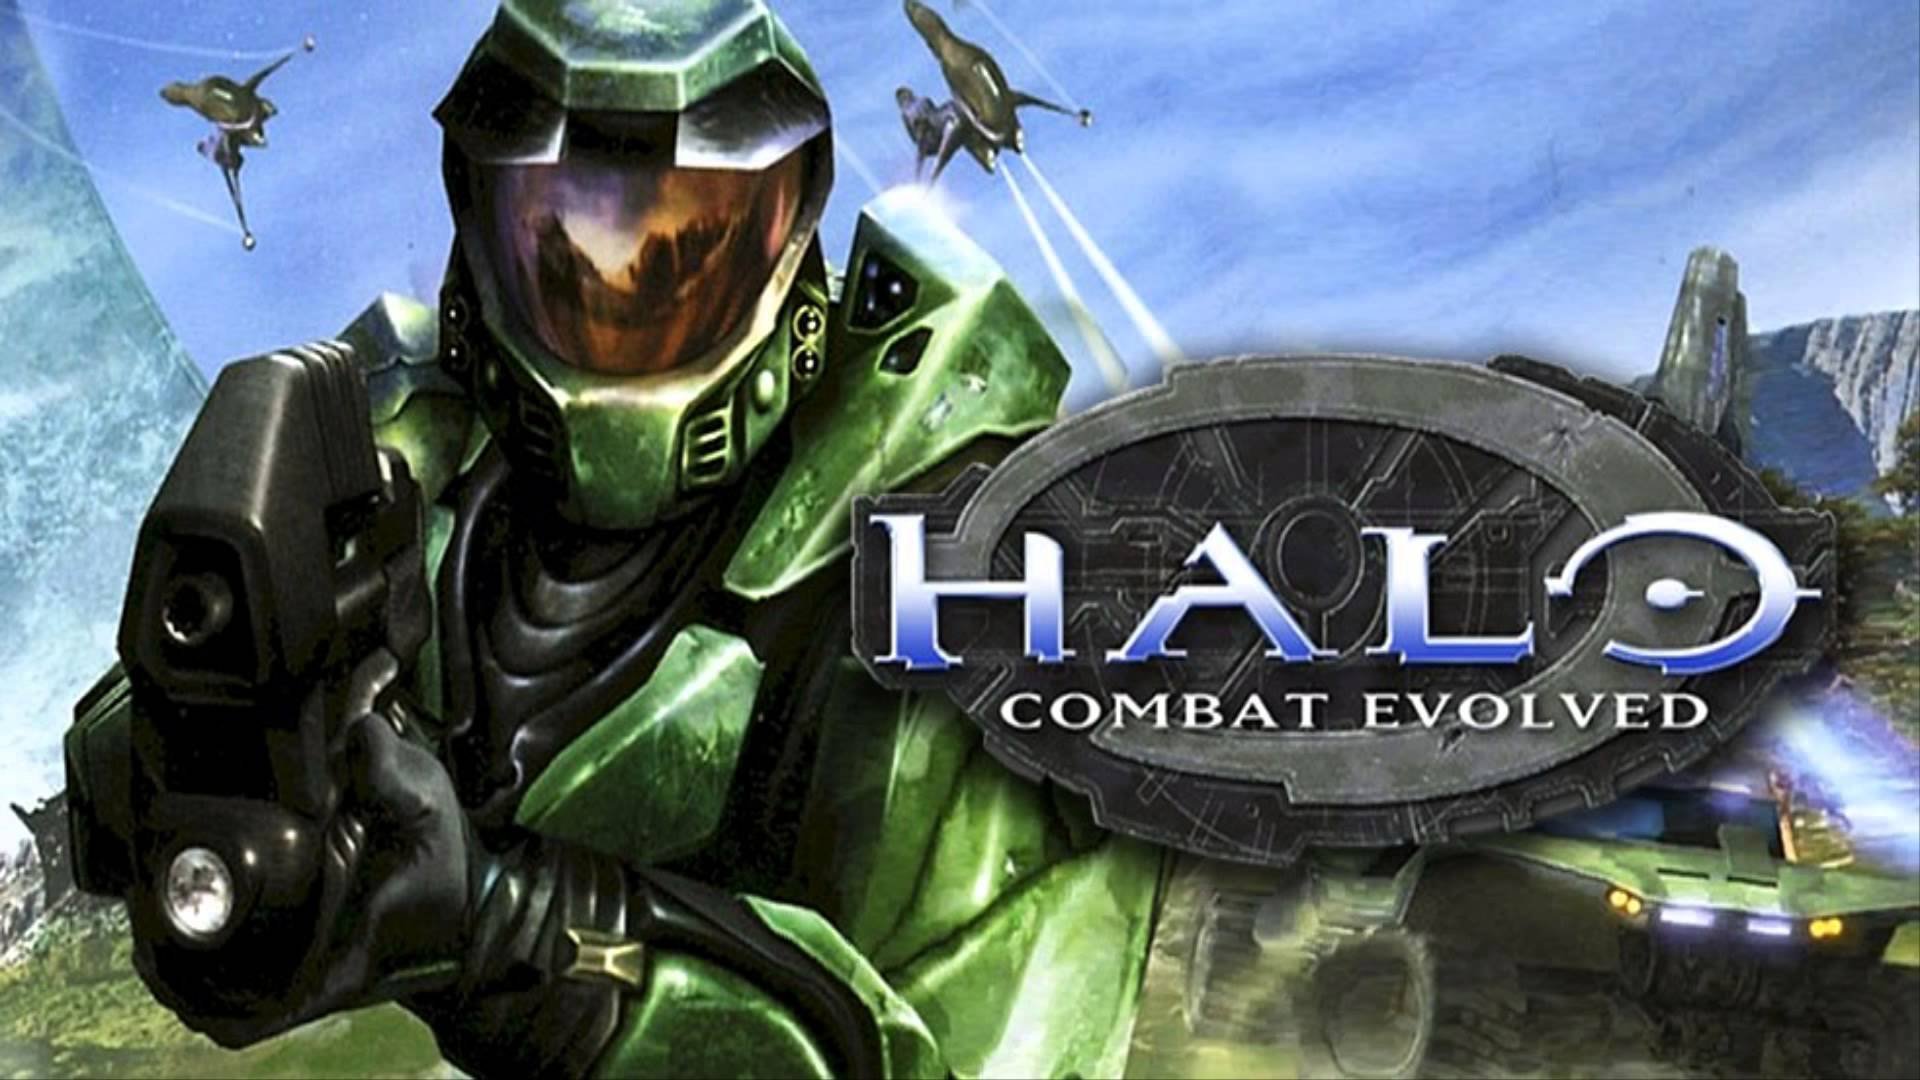 Halo wars jogo estrategia esclusivo xbox 360 microoft